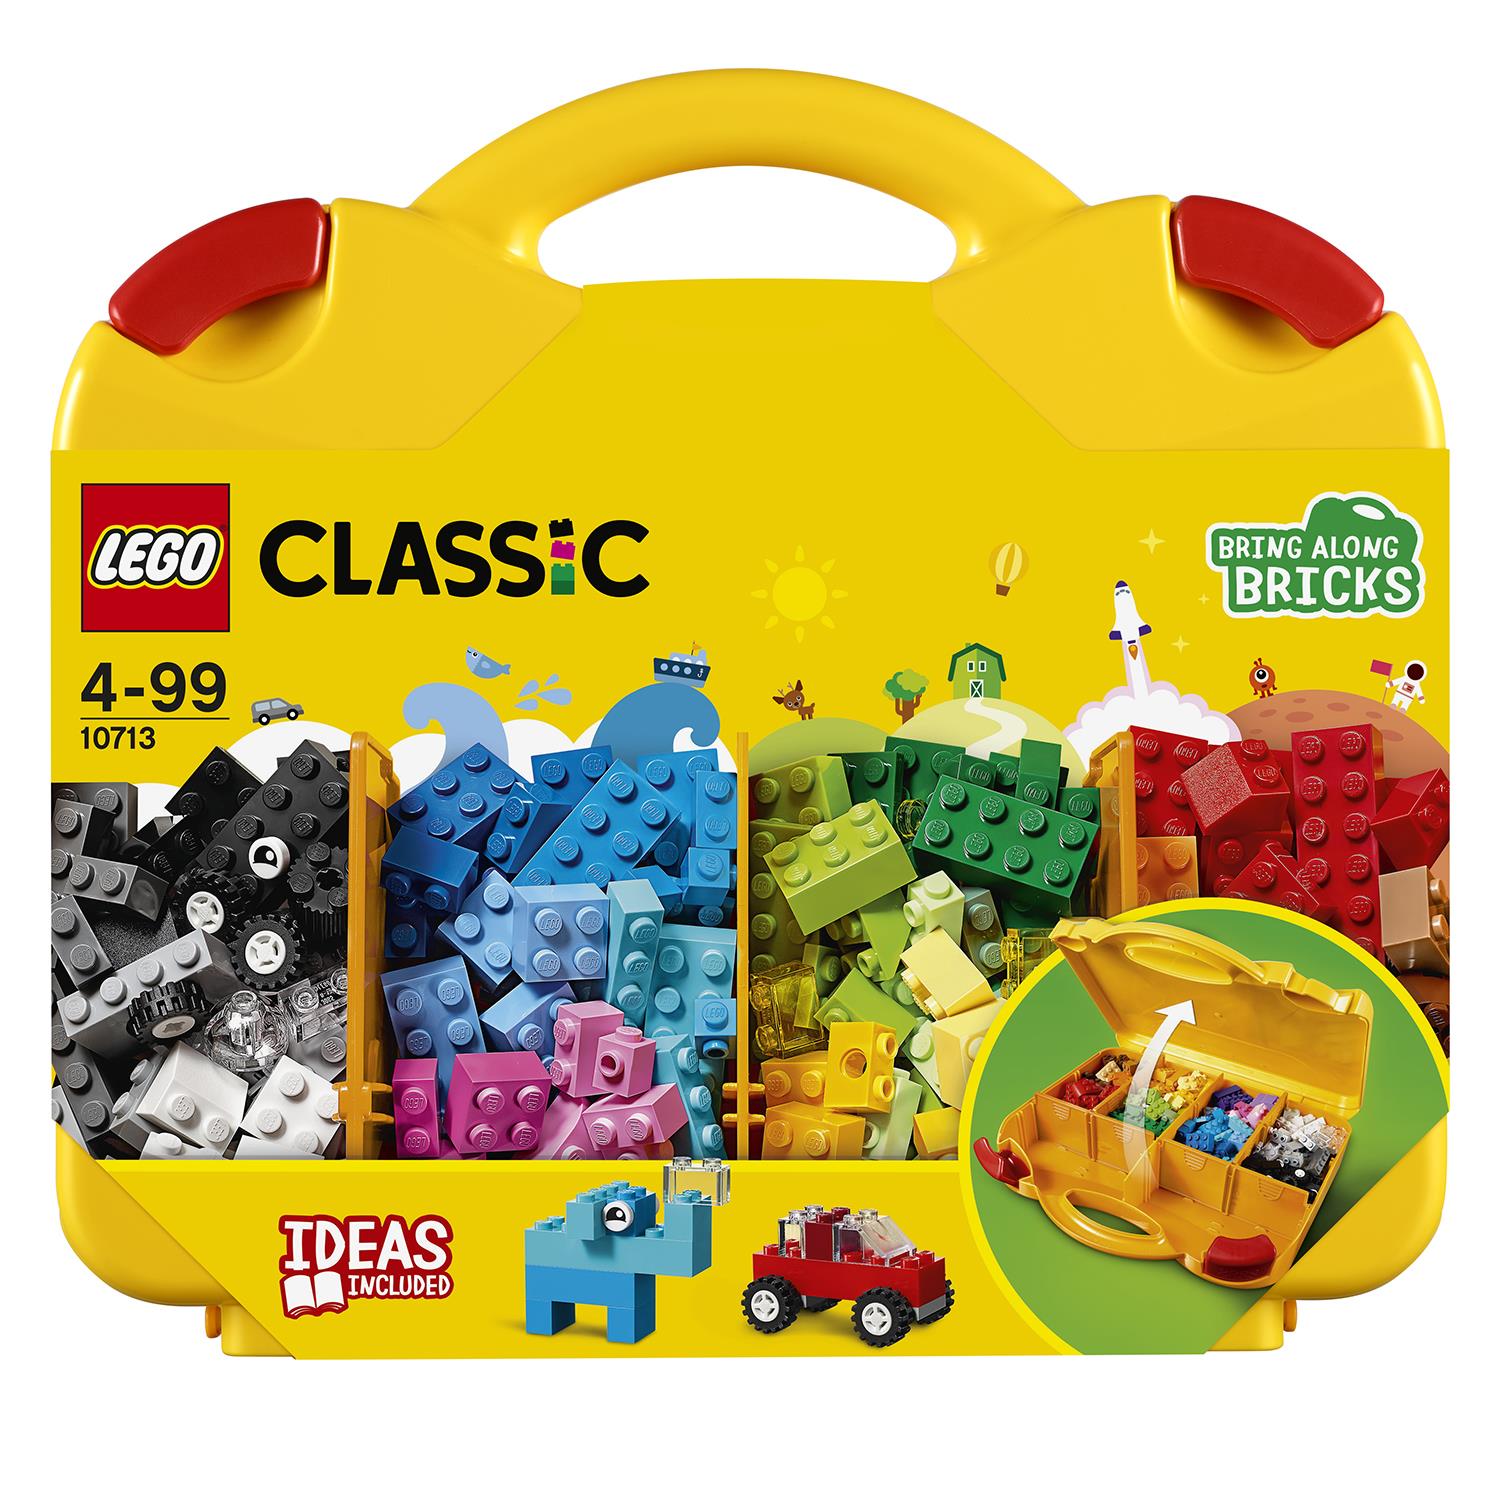 LEGO Classic Valigetta Creativa